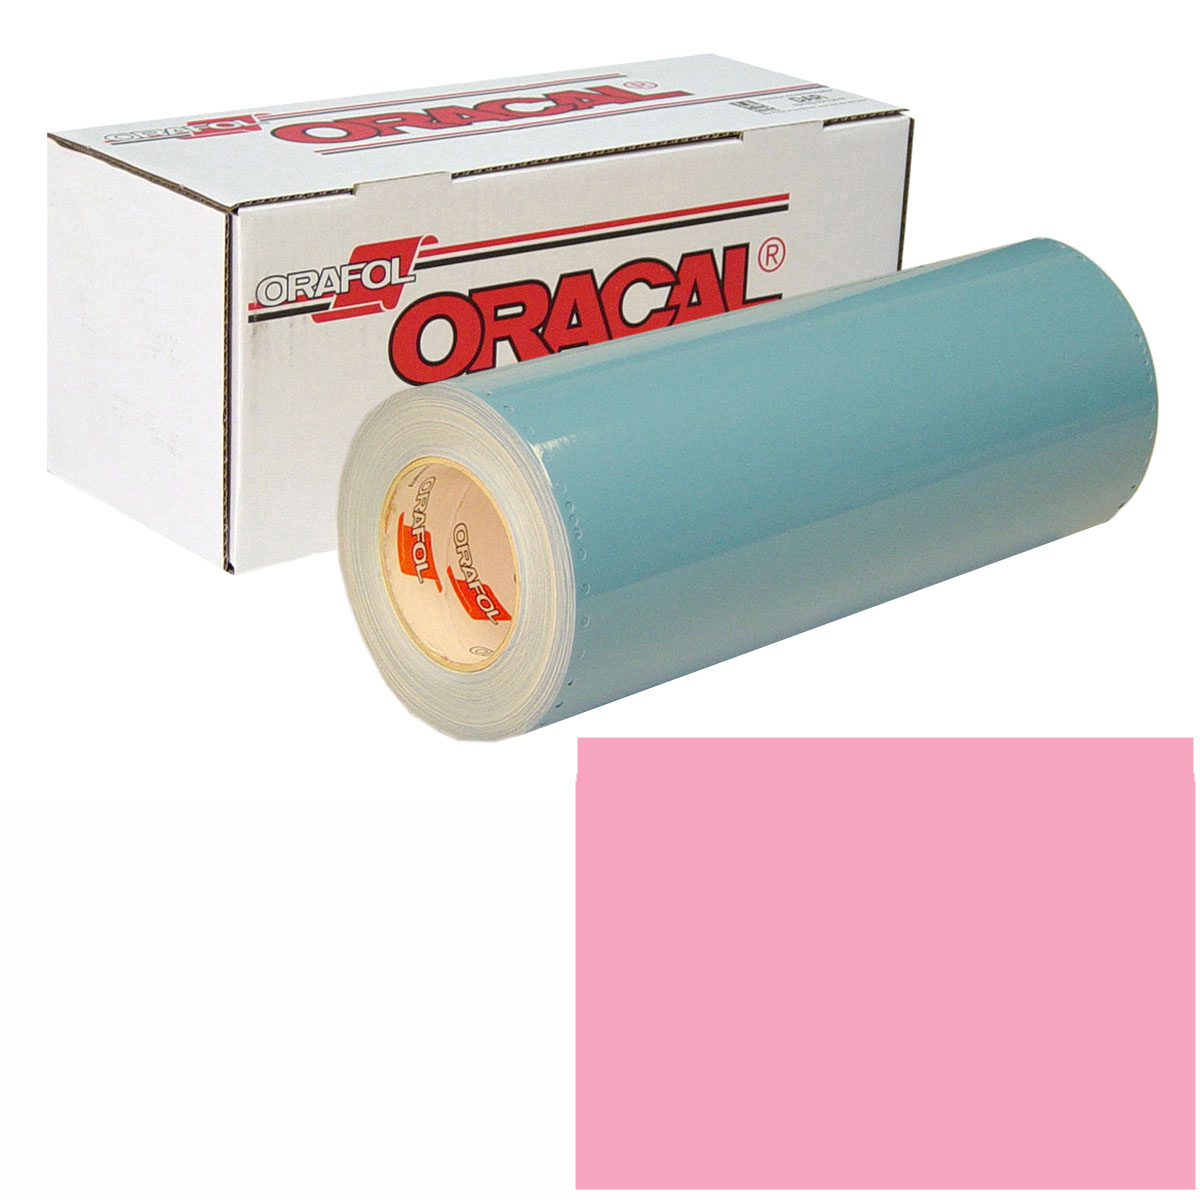 ORACAL 751 Unp 48in X 50yd 045 Soft Pink